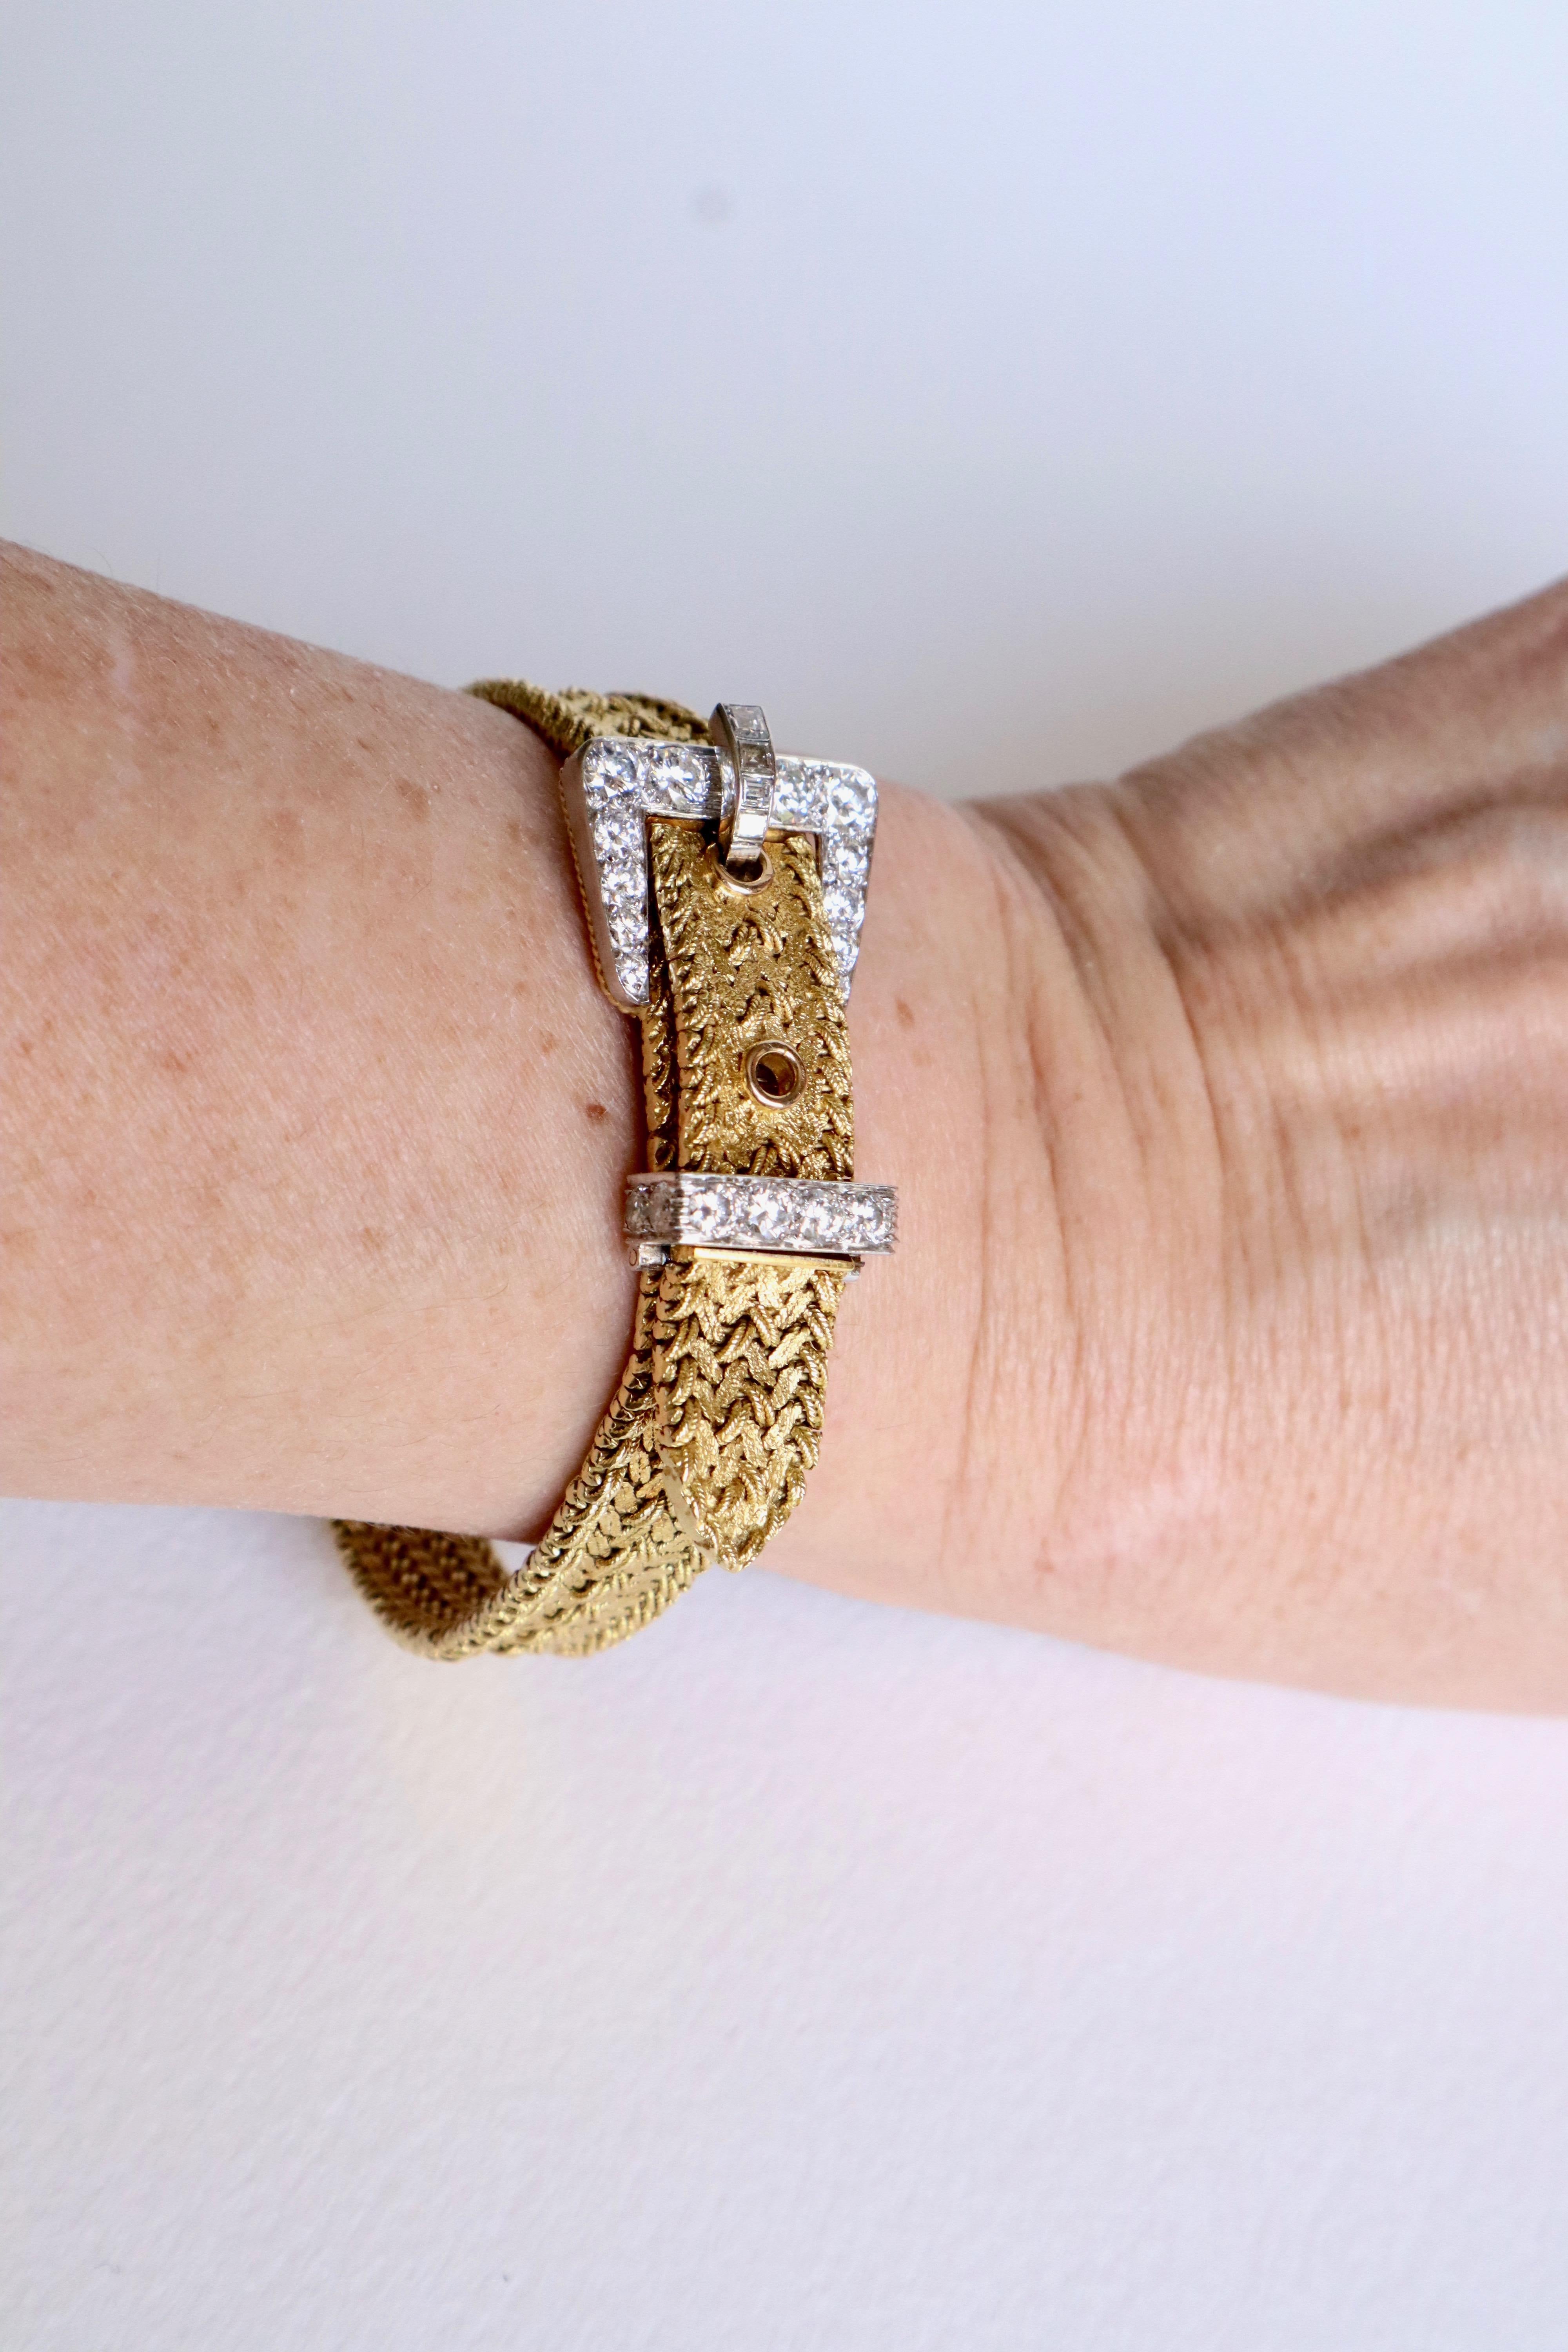 Kutchinsky Women's Secret Bracelet Watch in 18 Karat Gold 3 Carat Diamonds 4